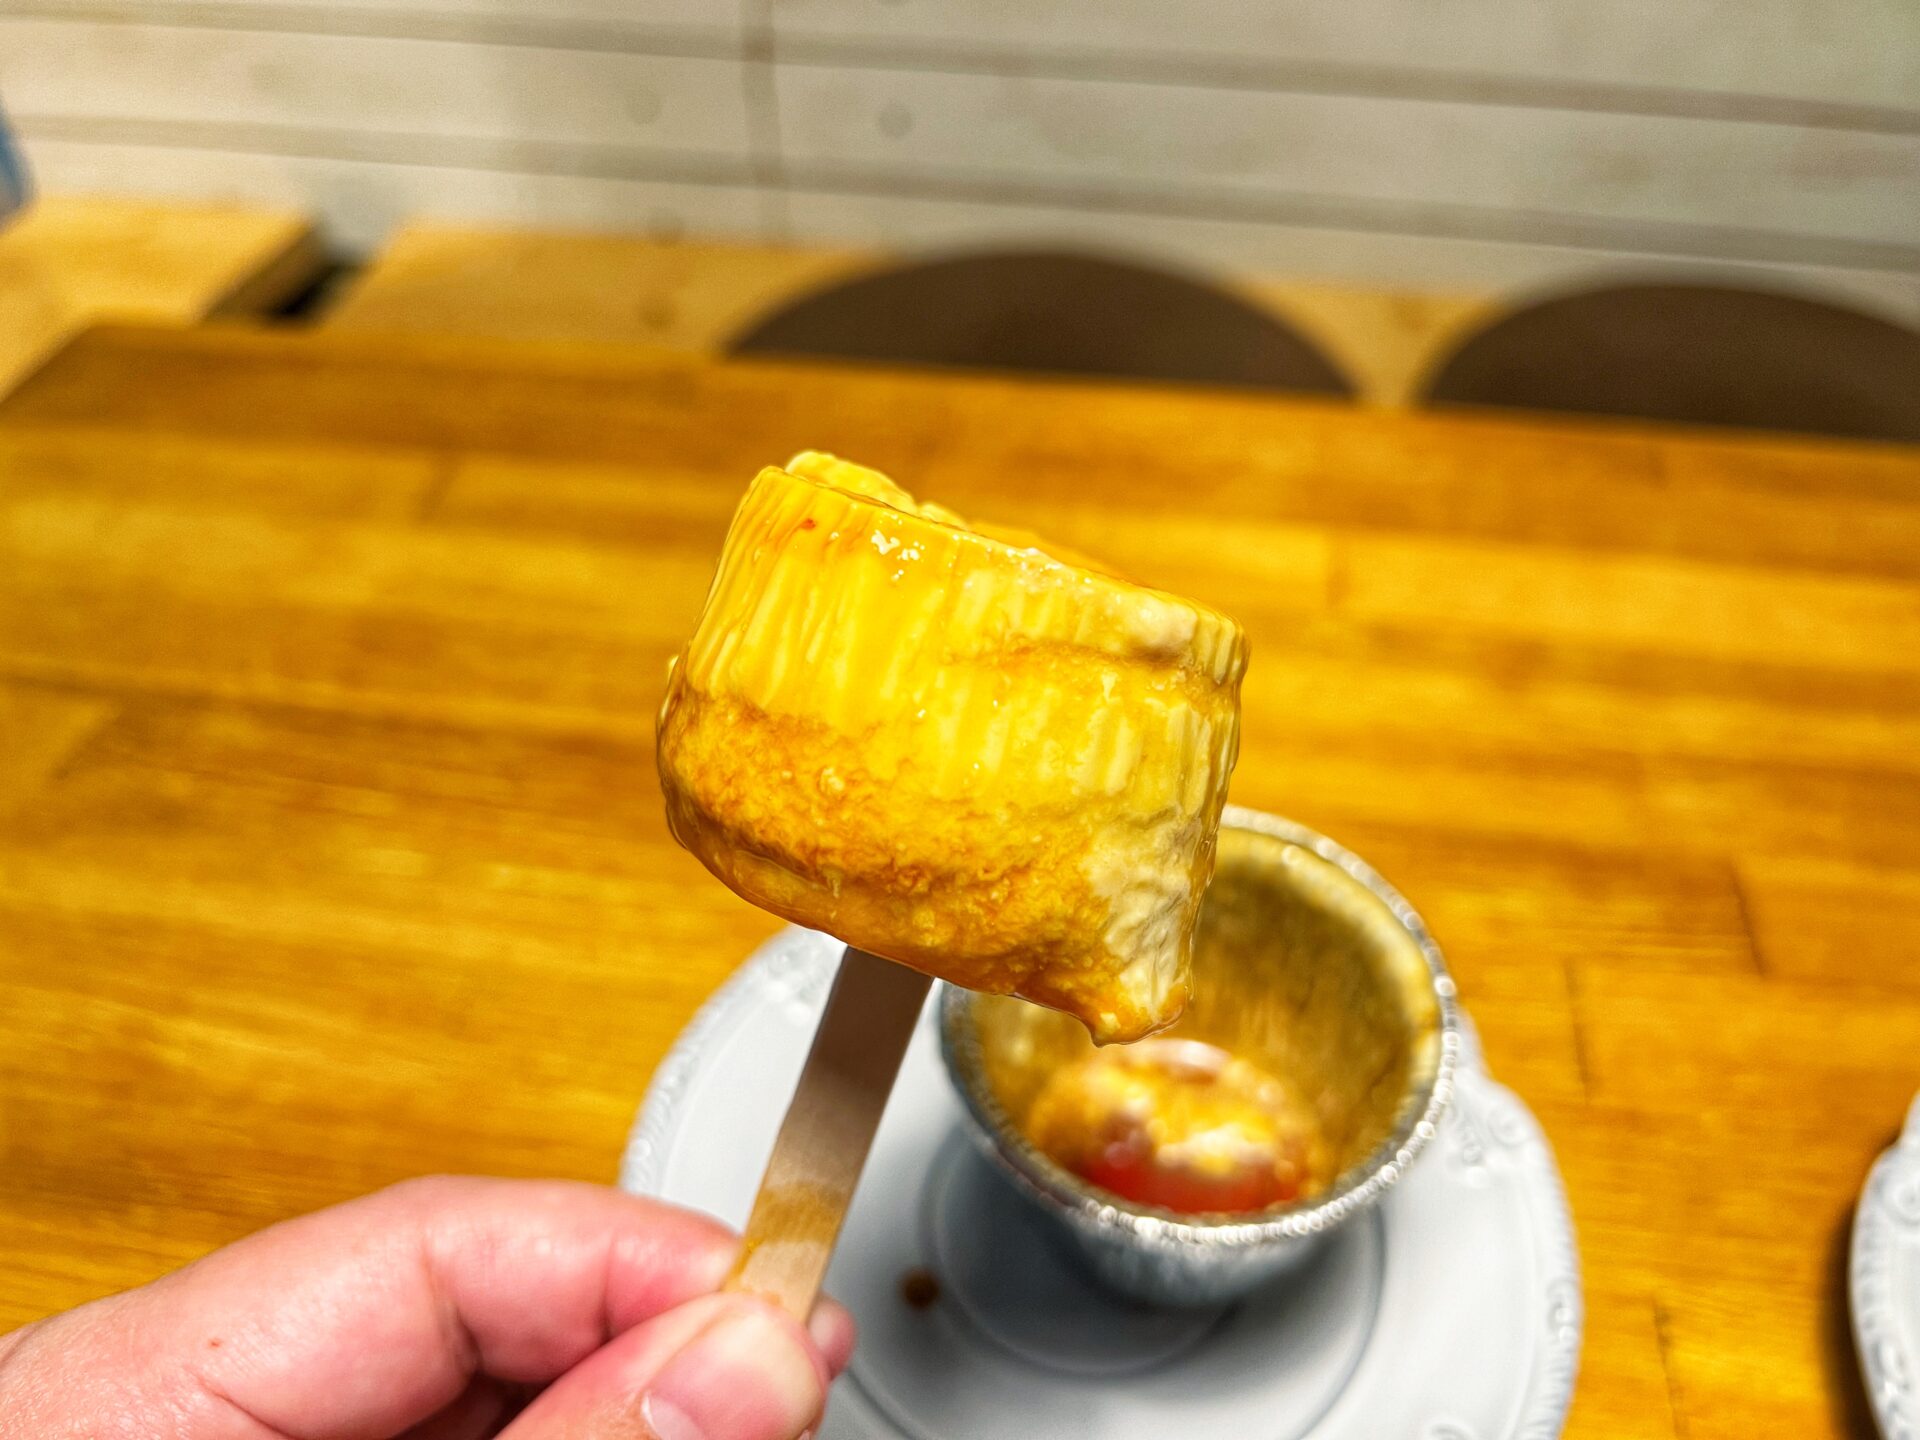 熊谷市「カルペディエム」新メニューにプリンアイス！ふわふわクリームカルボナーラも食べてきた